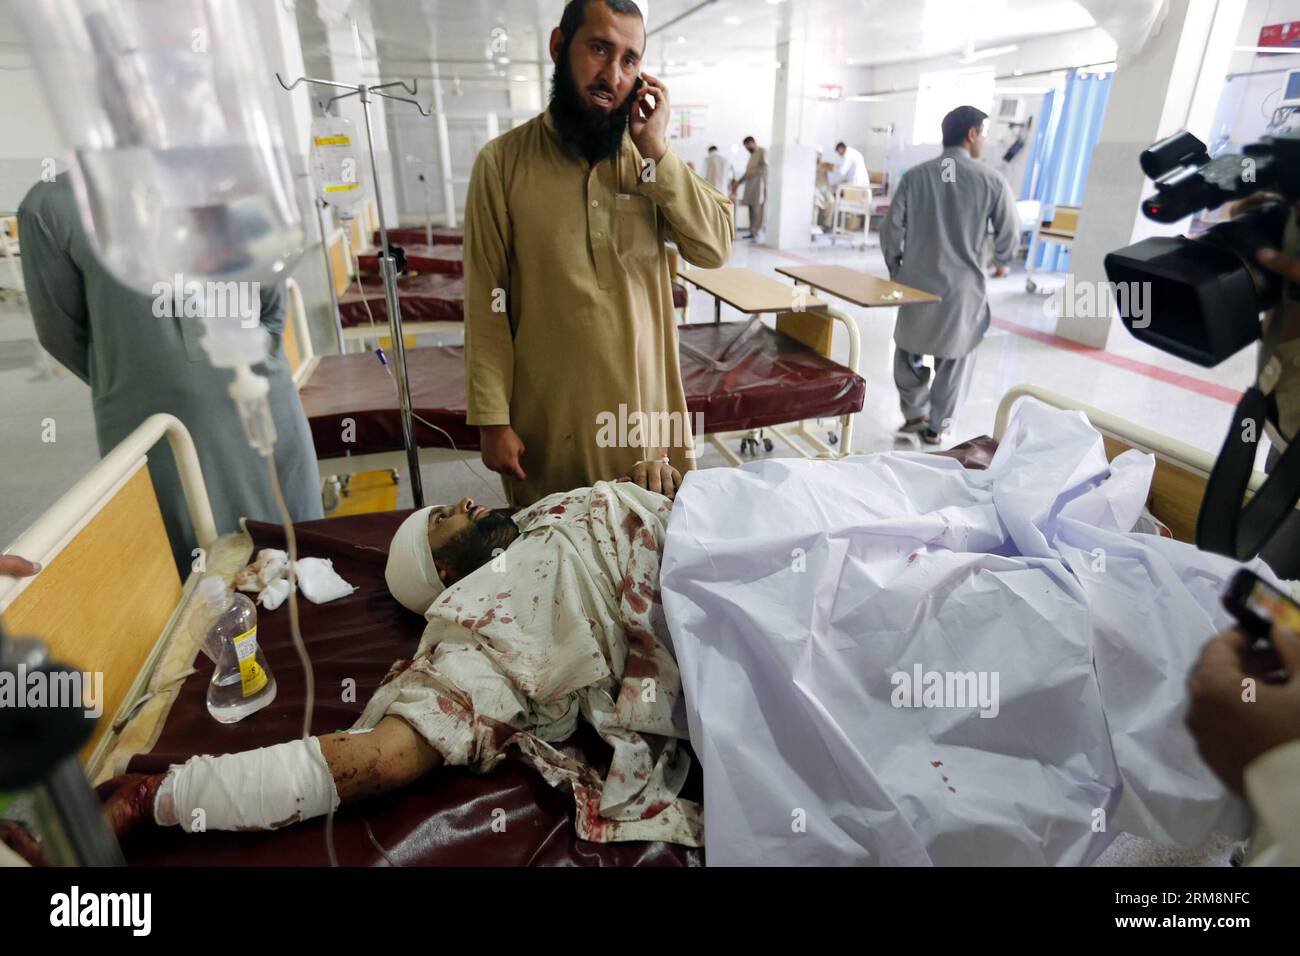 (140422) -- PESHAWAR, 22. April 2014 (Xinhua) -- ein verletzter Mann erhält medizinische Behandlung in einem Krankenhaus im nordwestlichen pakistanischen Peshawar am 22. April 2014. Mindestens vier Menschen wurden getötet und 33 weitere verletzt, als am Dienstagmorgen eine Bombe in der Nähe eines Polizeifahrzeugs im nordwestlichen Charsadda-Bezirk in Pakistan explodierte, berichteten lokale Medien. (Xinhua/Umar Qayyjm) PAKISTAN-CHARSADDA-BLAST PUBLICATIONxNOTxINxCHN Peshawar 22. April 2014 XINHUA to Compled man erhält medizinische Behandlung IN einem Krankenhaus im Nordwesten Pakistans S Peshawar AM 22. April 2014 wurden mindestens vier Prominente GETÖTET und 33 weitere I Stockfoto